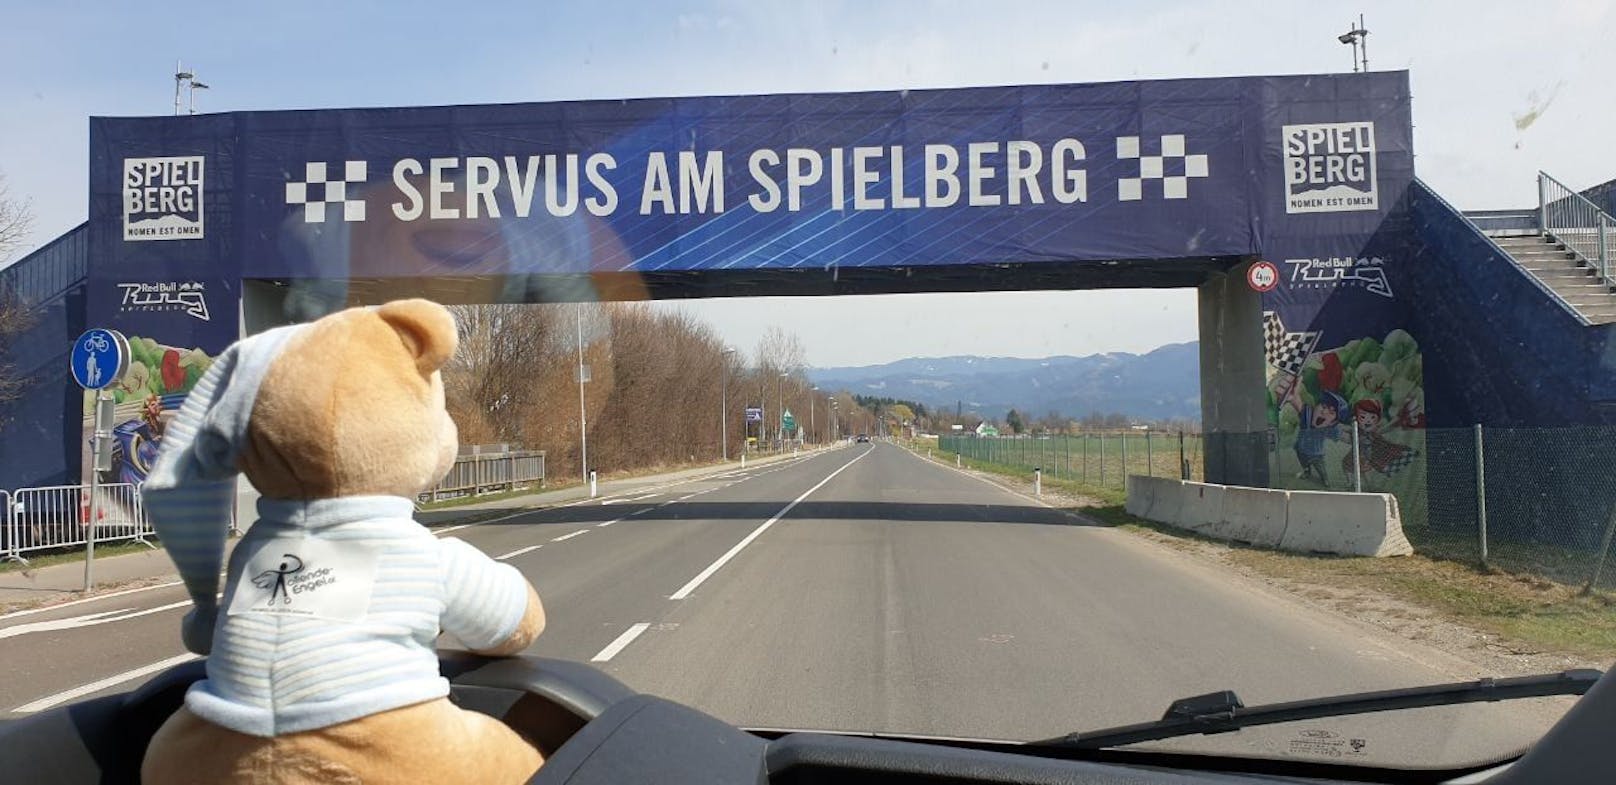 Servus am Spielberg - Jürgen ist am Ziel angekommen.